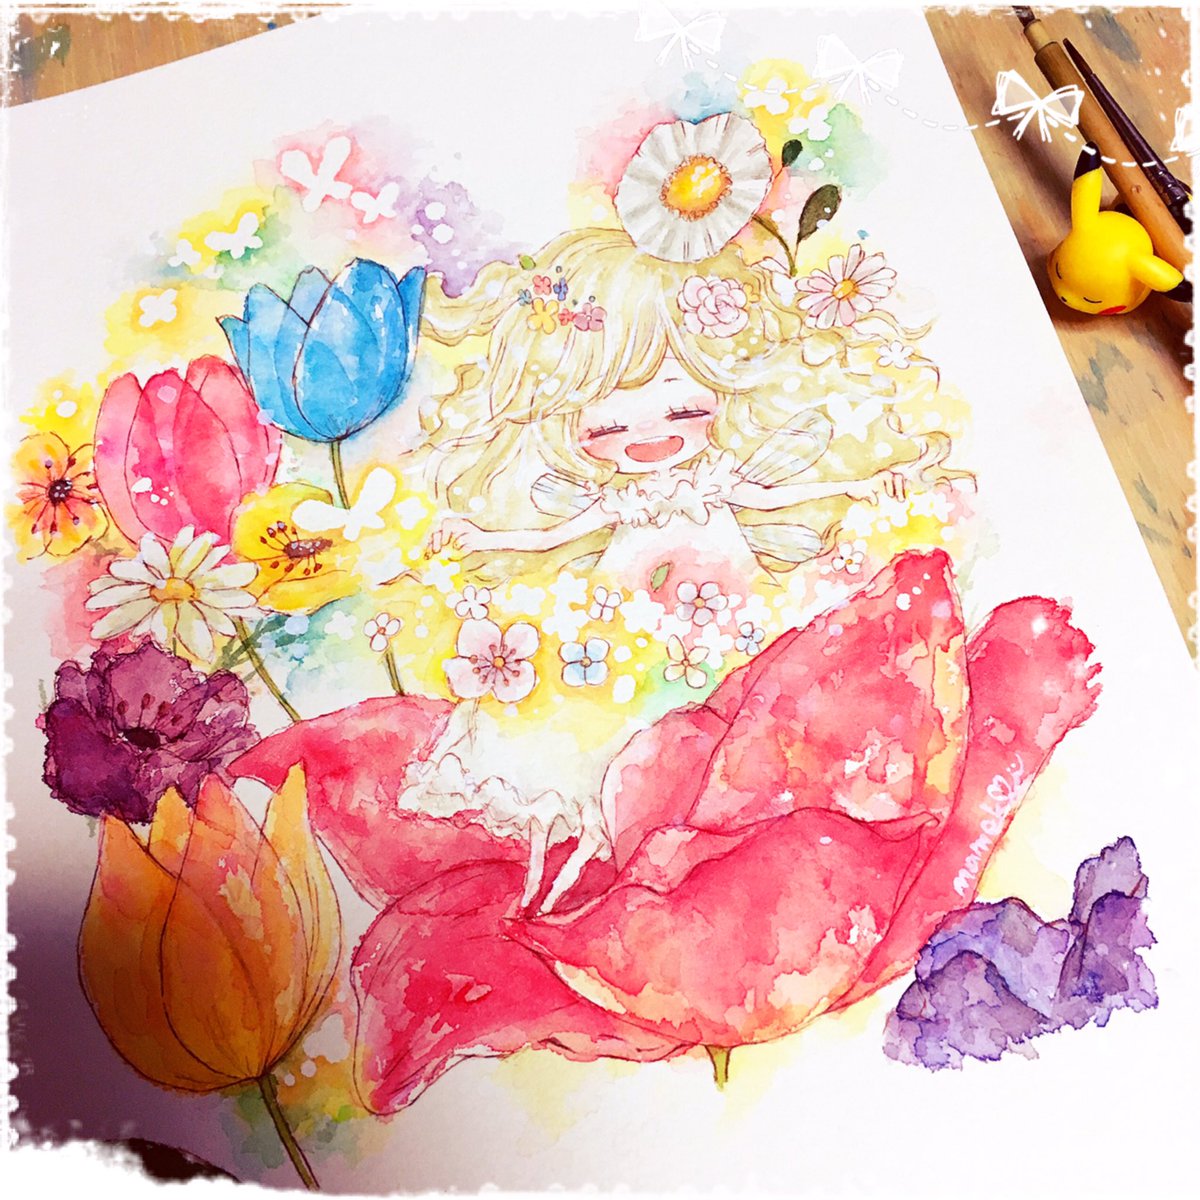 まめこ 小さいcolors 6 23 Artslaboさま No Twitter 完成しました わたしはなんで生まれたのか なにものなのか そんなことは どうでもいいの いまが とってもしあわせだから それでいいの 親指姫をイメージして描きました イラスト 透明水彩 ガチ制作会